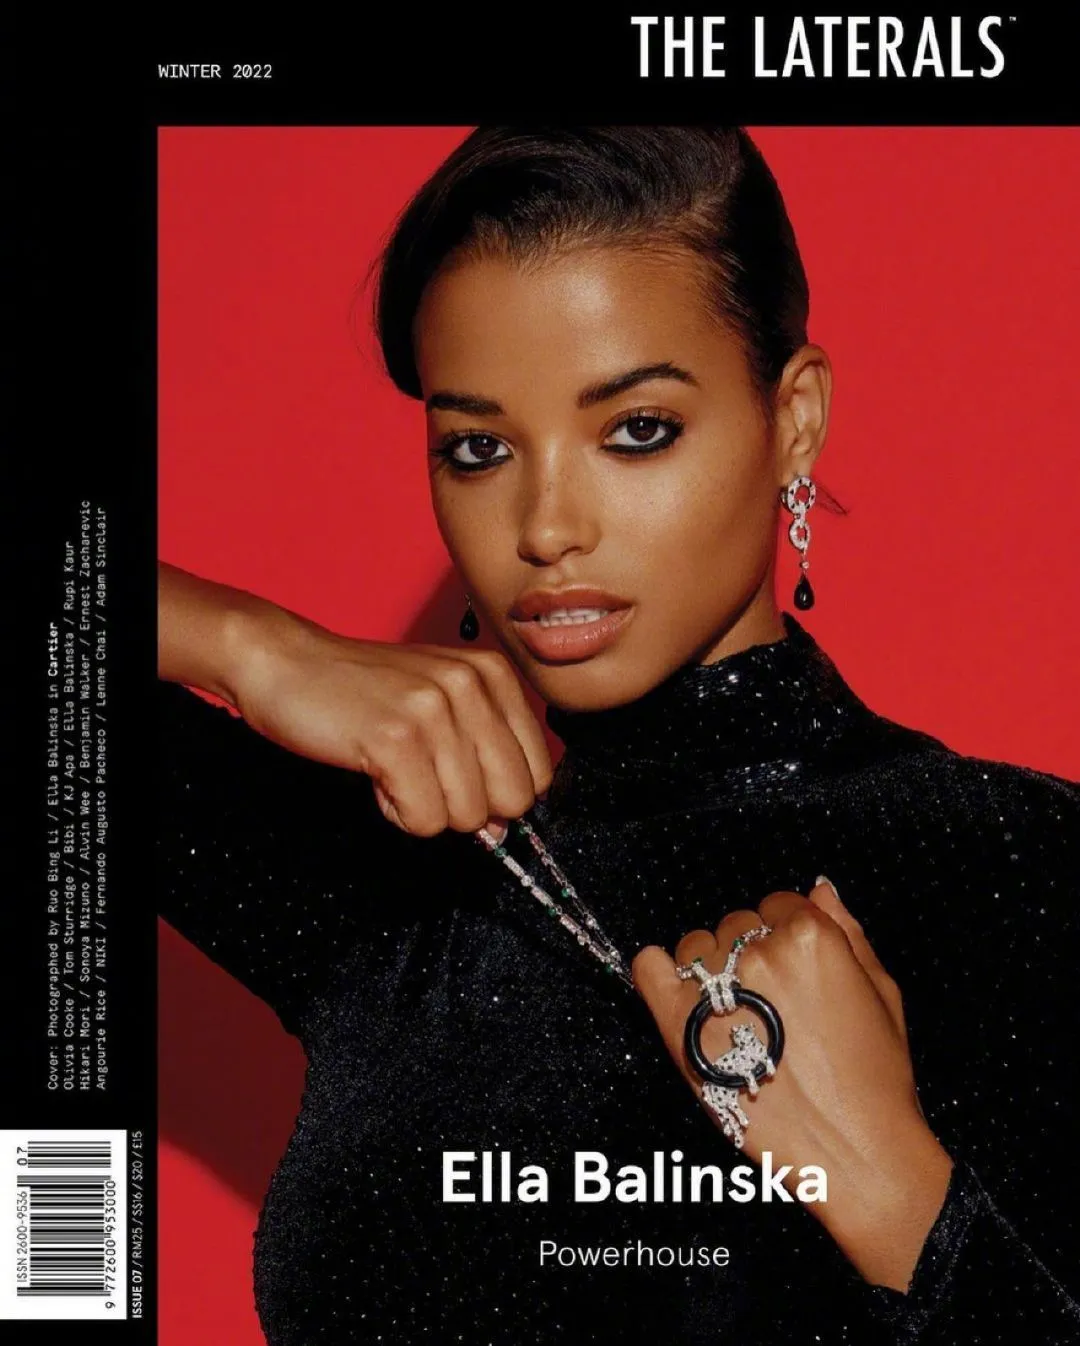 Ella Balinska, 'The Laterals' Magazine November Photo | FMV6